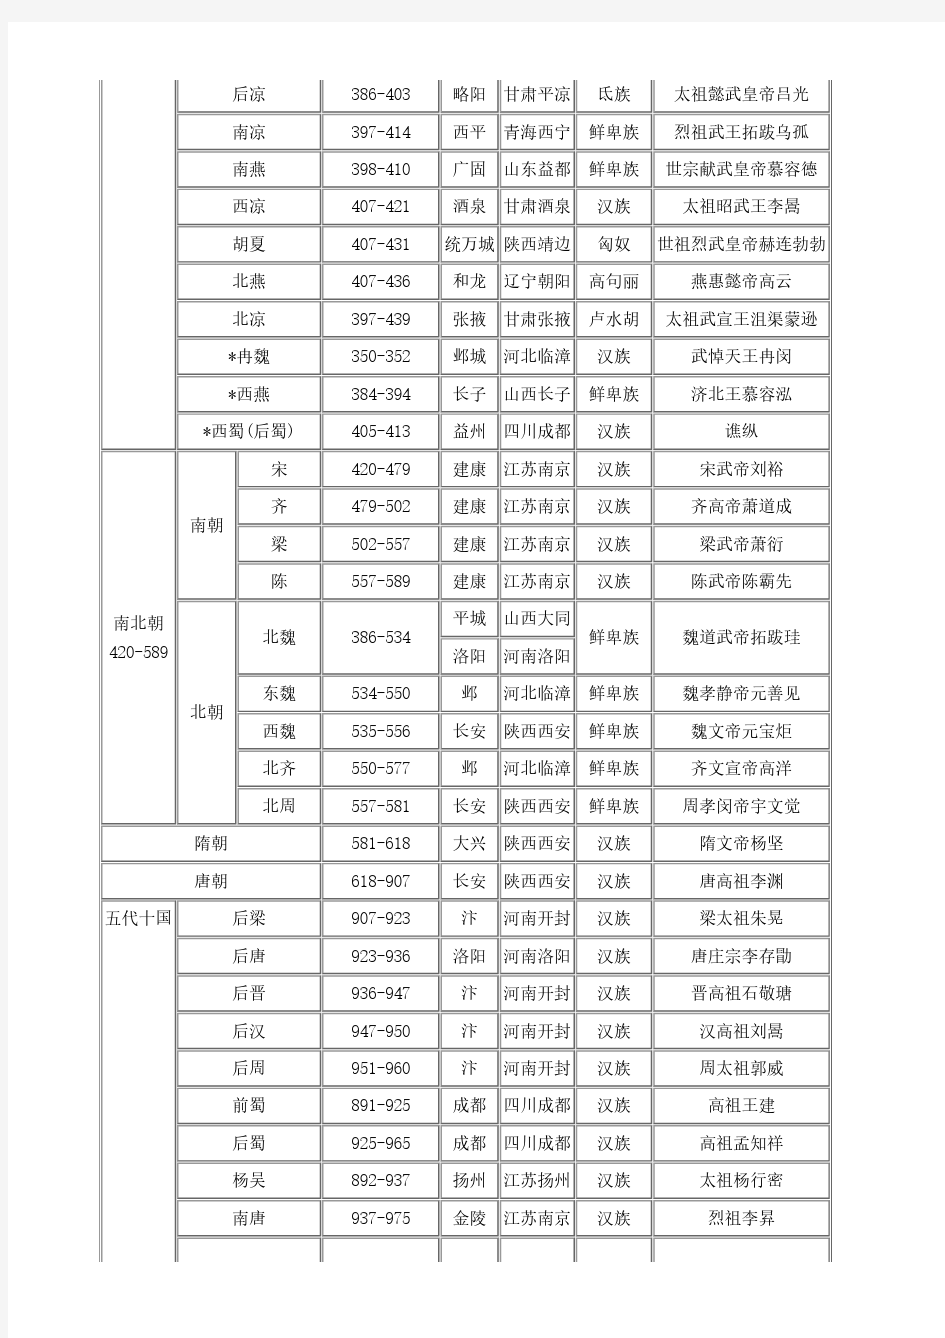 中国历史朝代顺序表年表(完整)